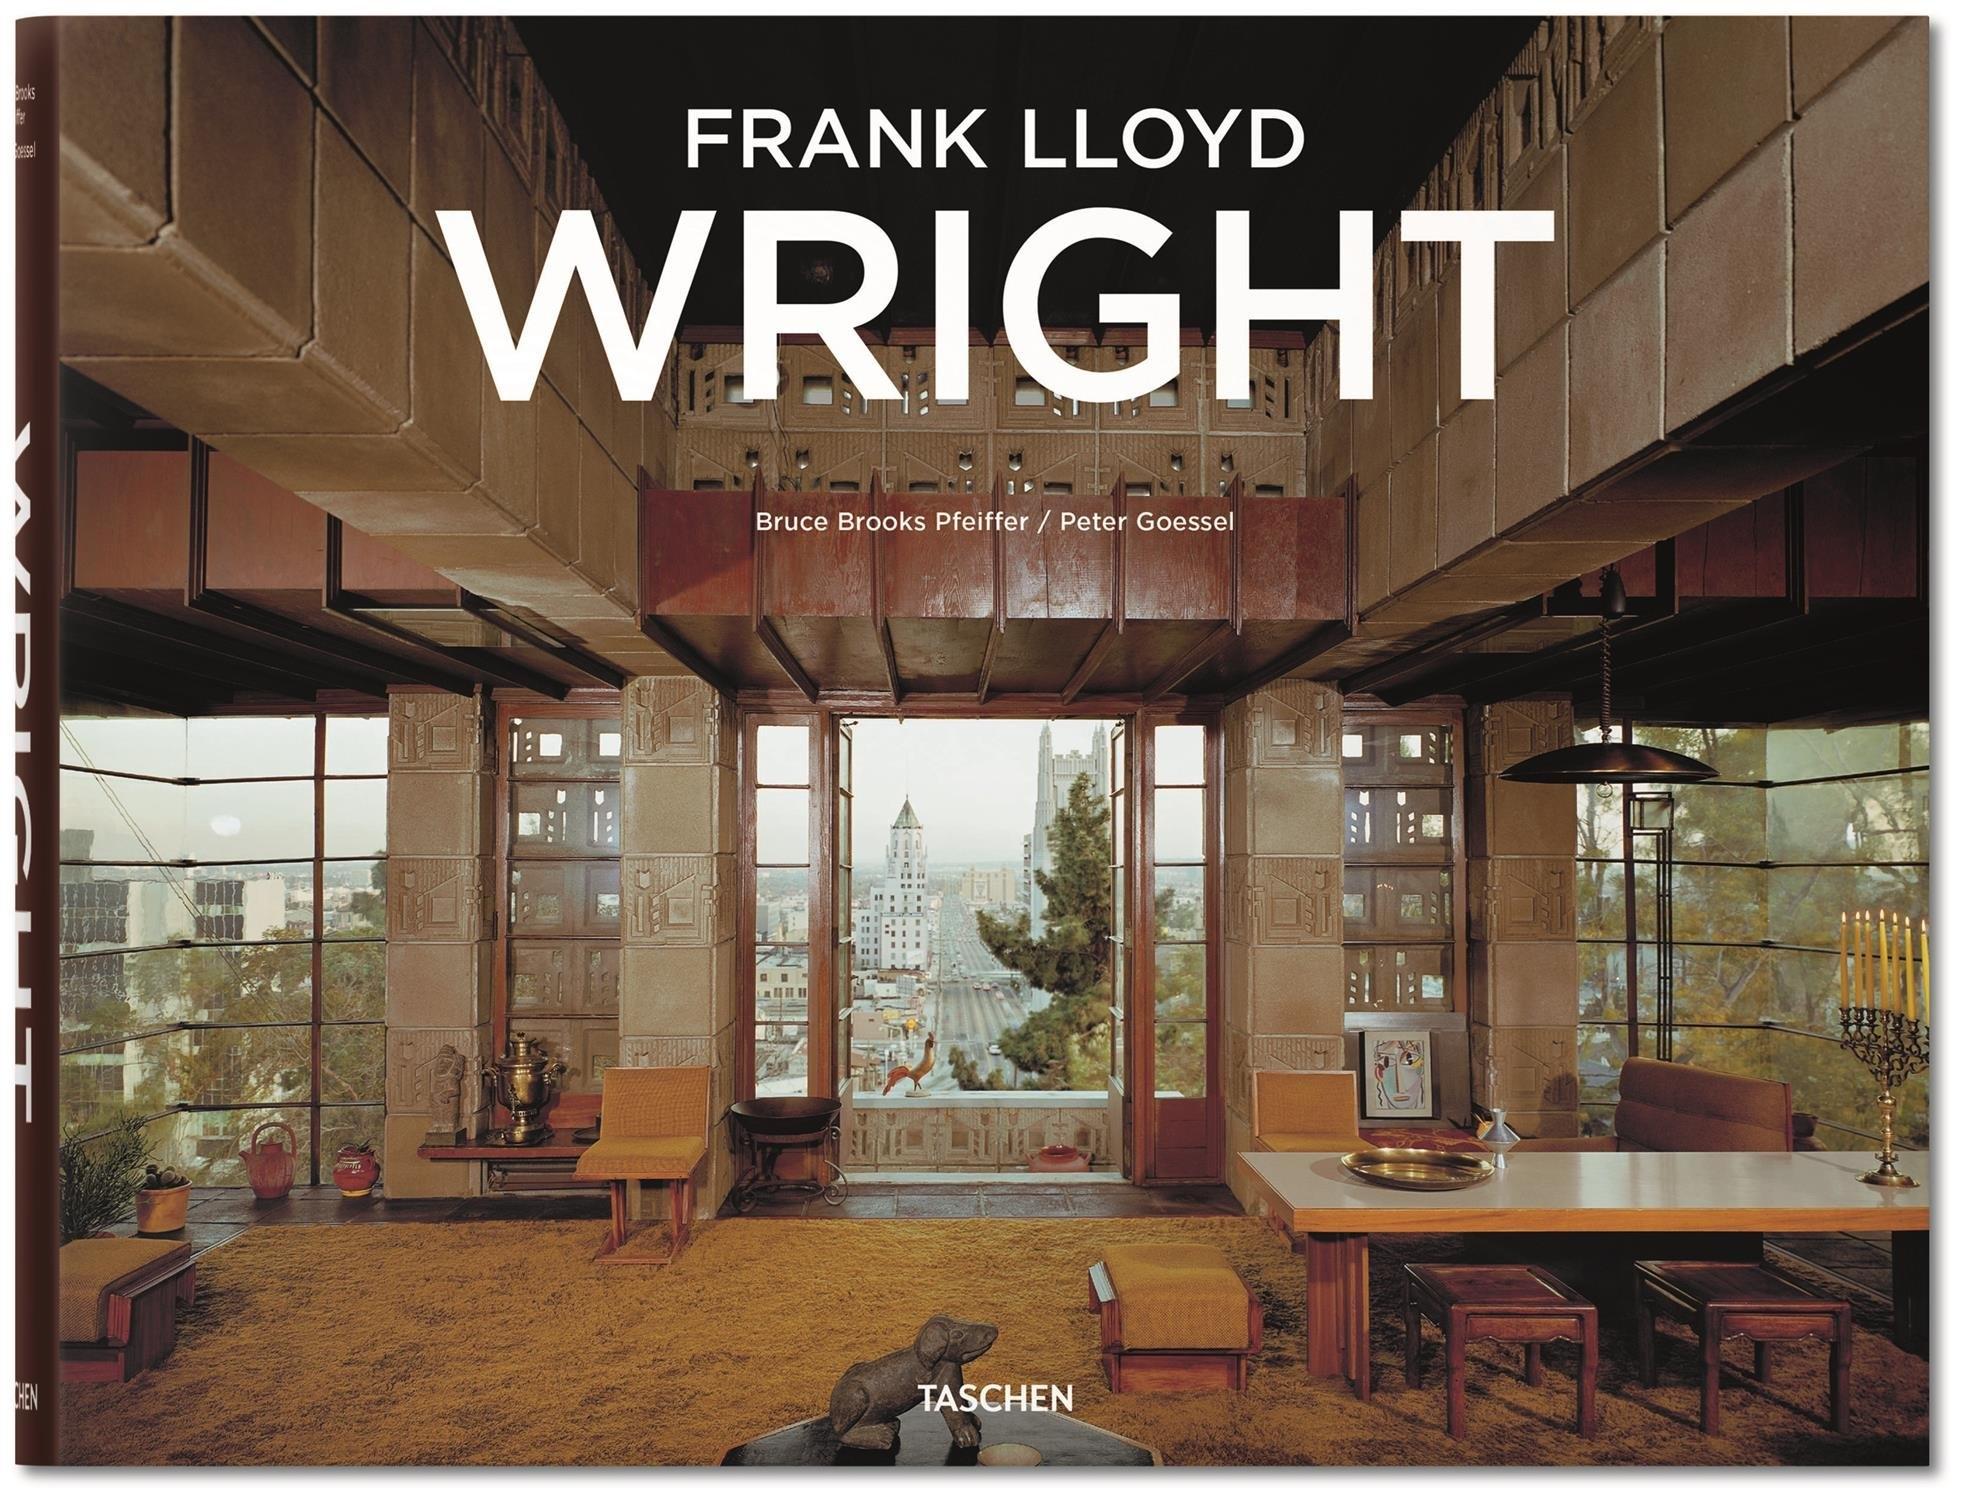 WRIGHT: FRANK LLOYD WRIGHT